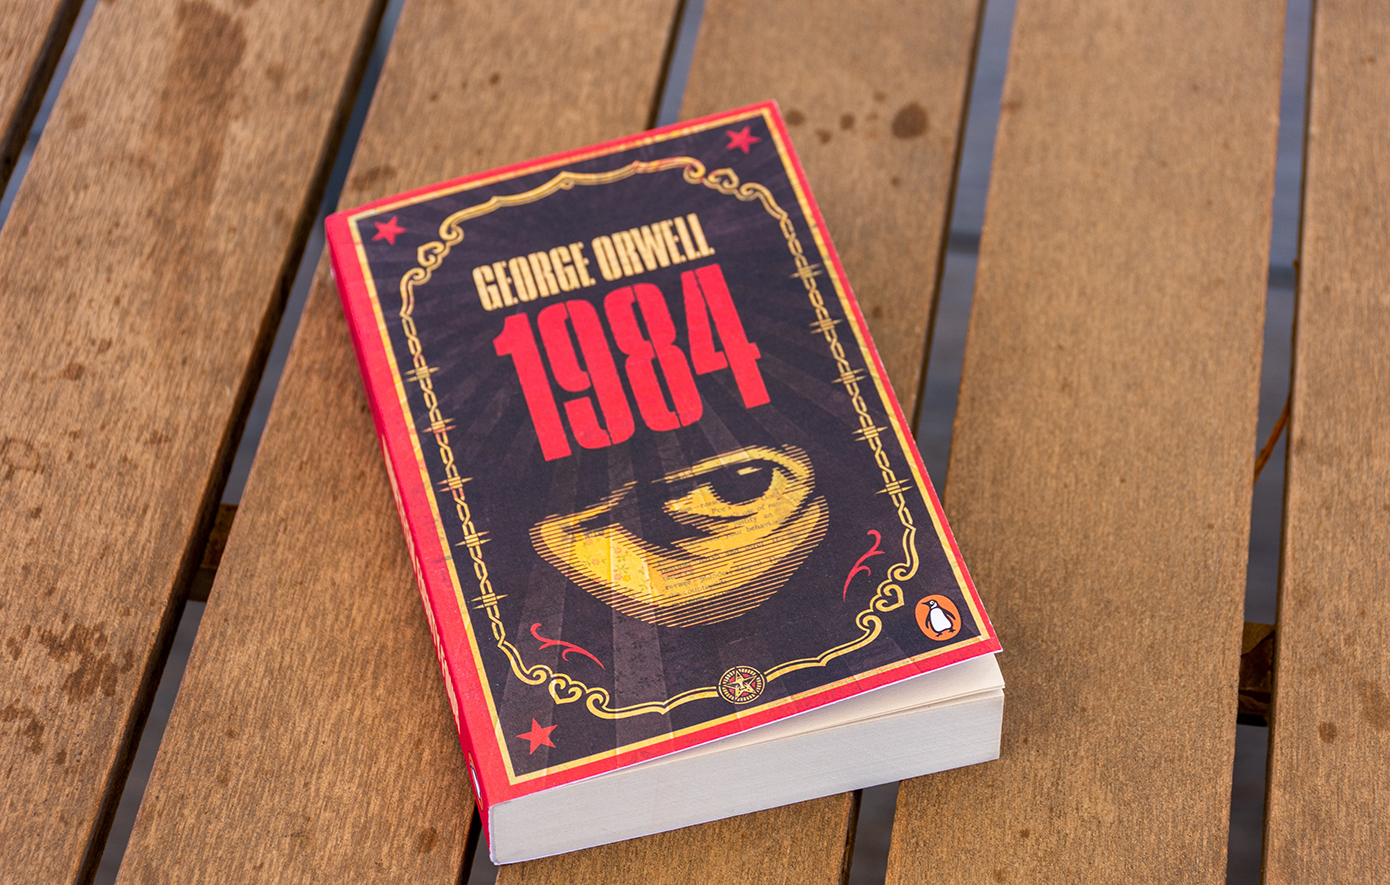 Σαν σήμερα 8 Ιουνίου: Εκδίδεται το «1984» του Τζορτζ Όργουελ &#8211; Ο προφητικός «Big Brother» γίνεται σύμβολο των παρεμβατικών και καταπιεστικών κυβερνήσεων